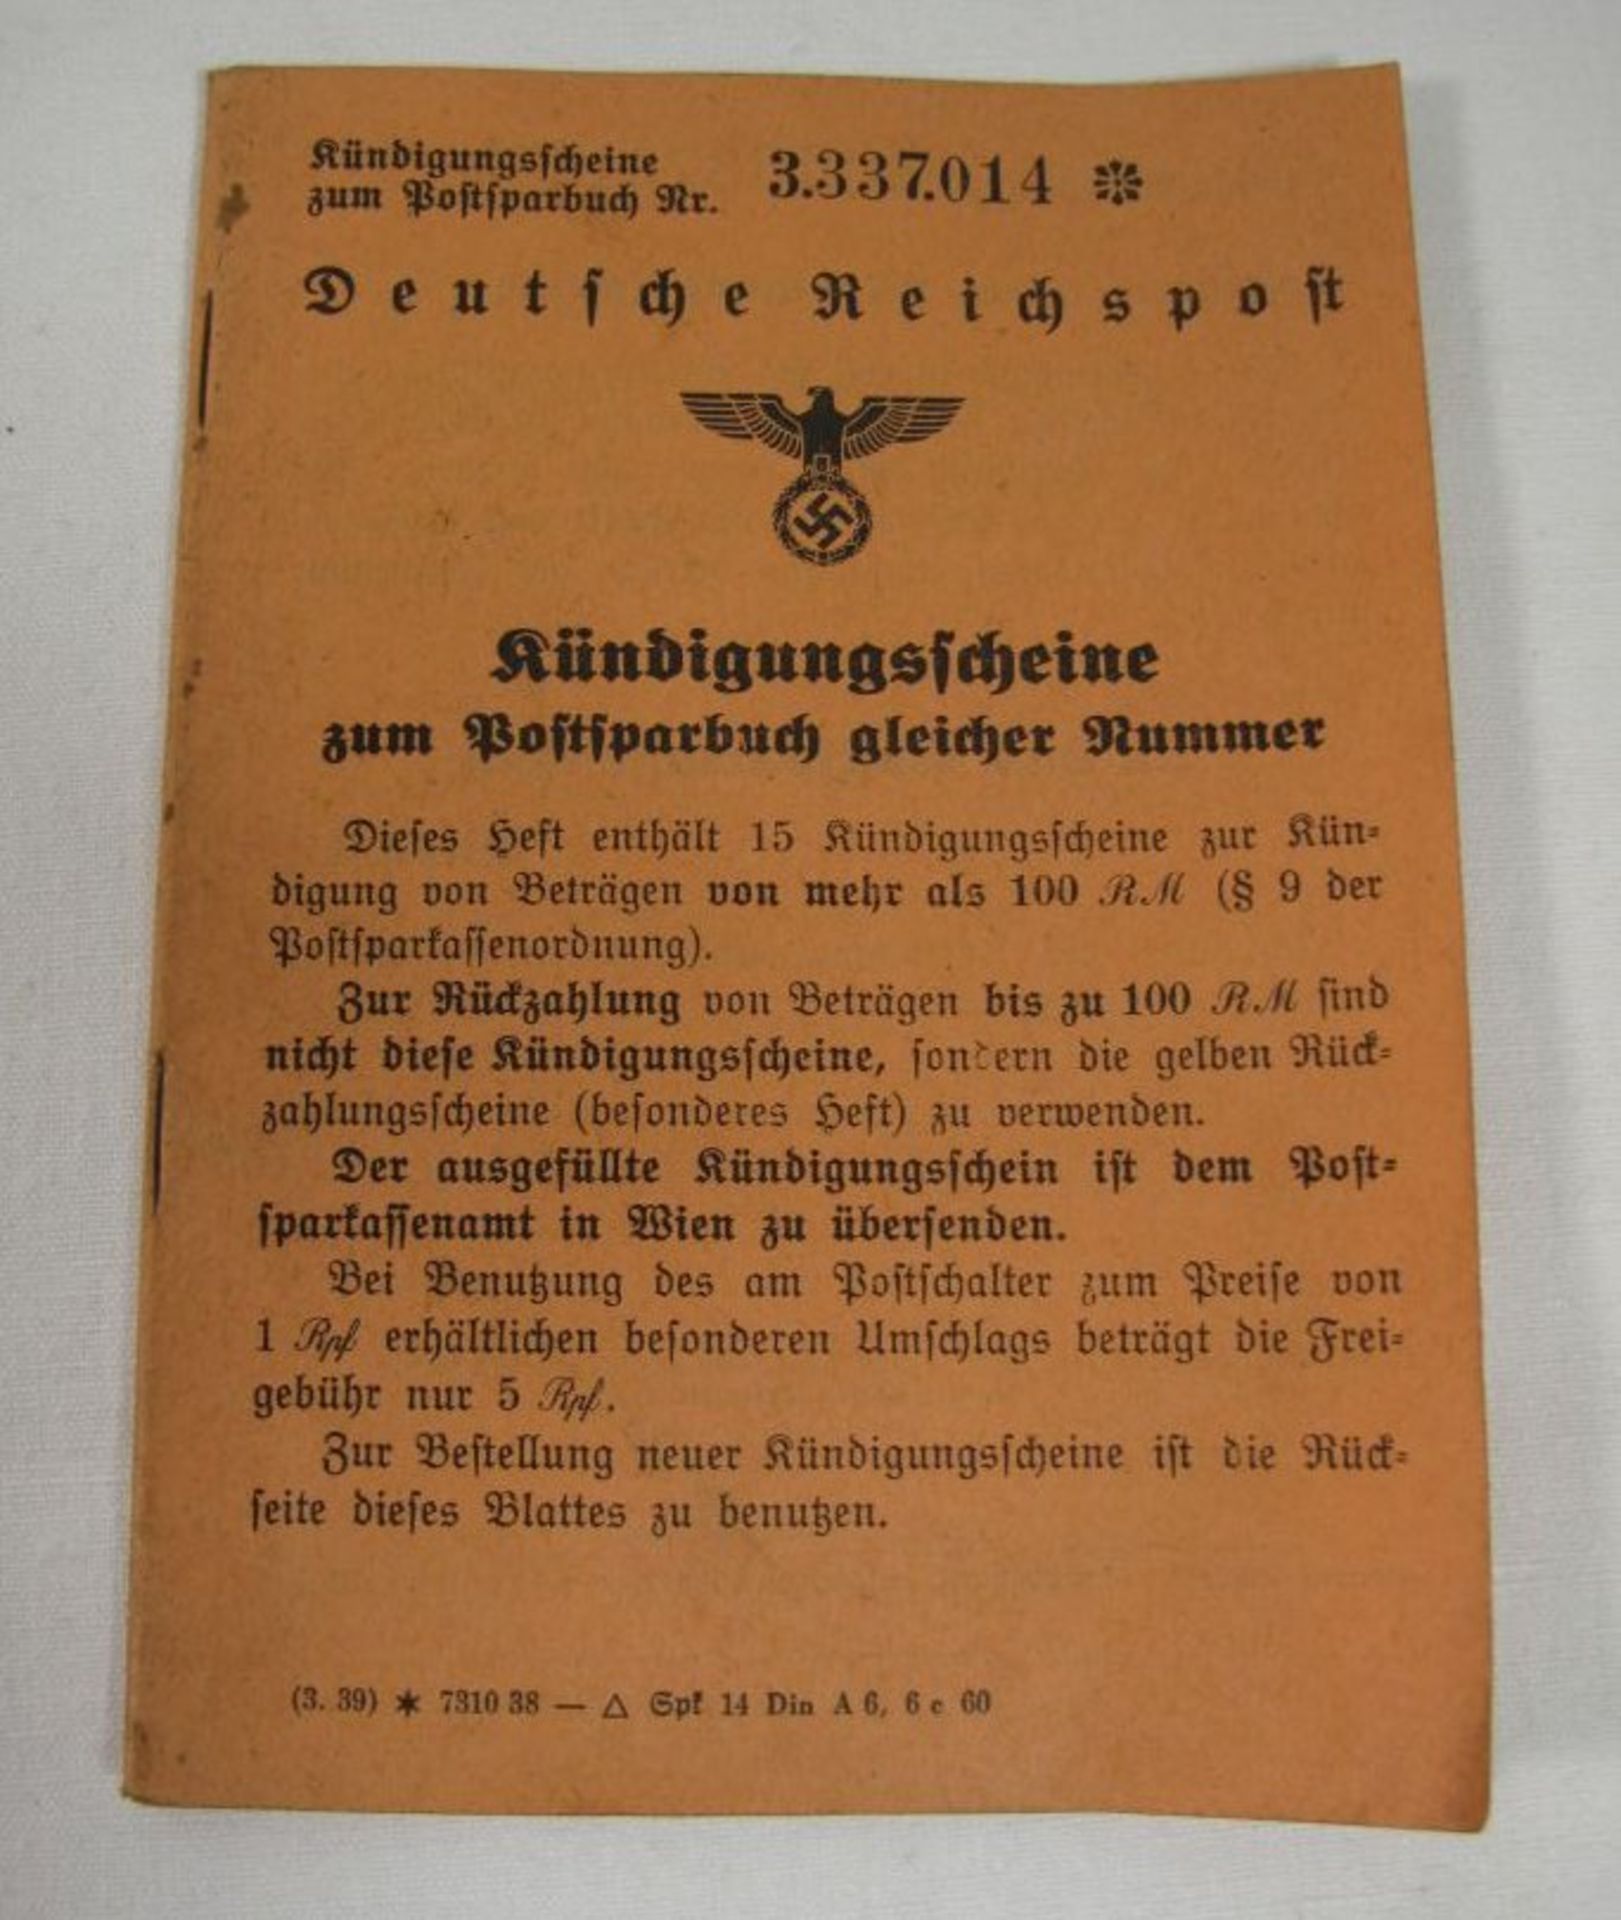 Kündigungsscheine zum Postsparbuch gleicher Nummer, 3. Reich